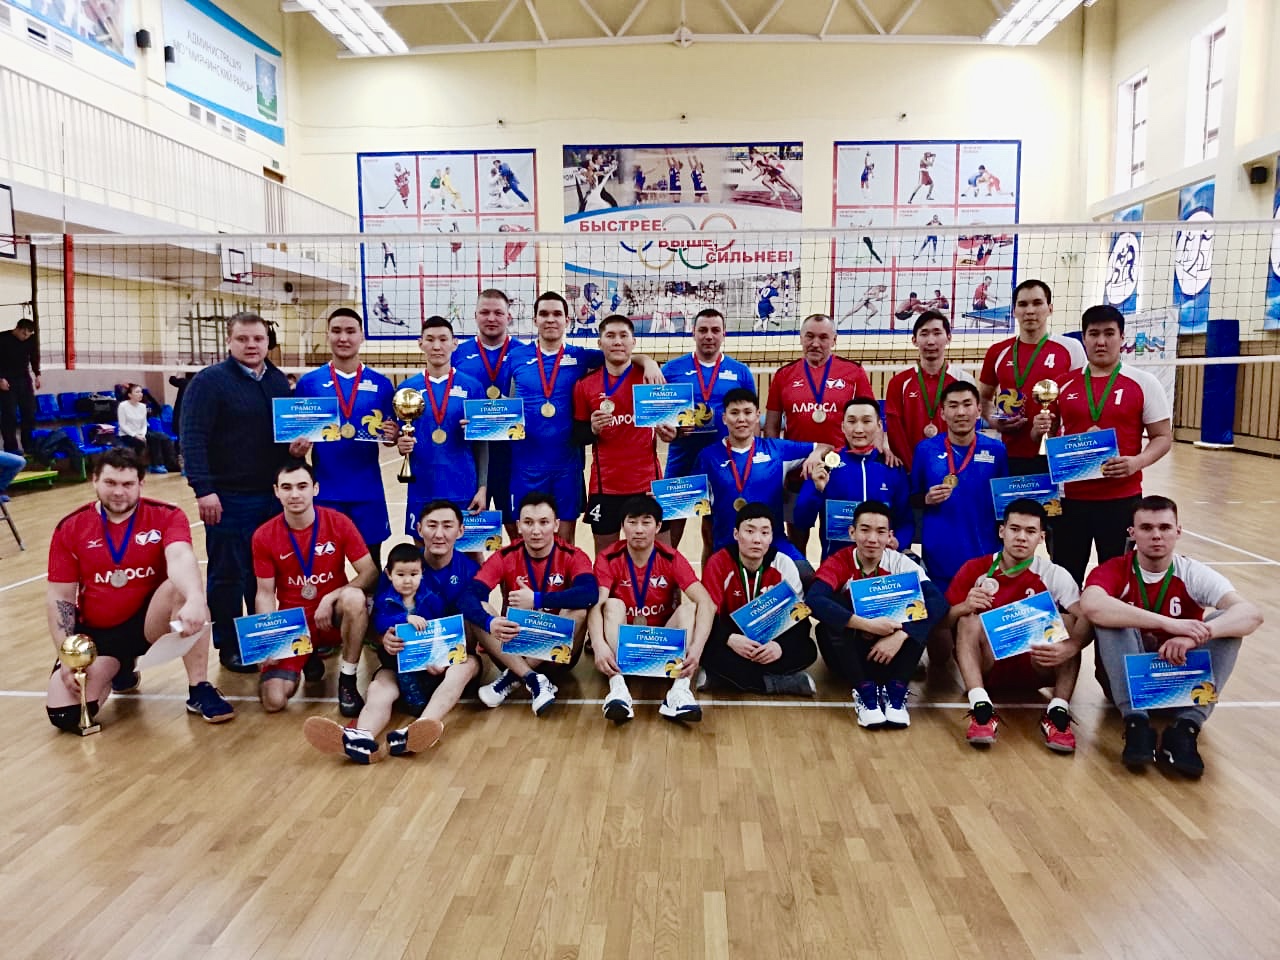 Открытое Первенство города Мирного по волейболу среди мужских команд.